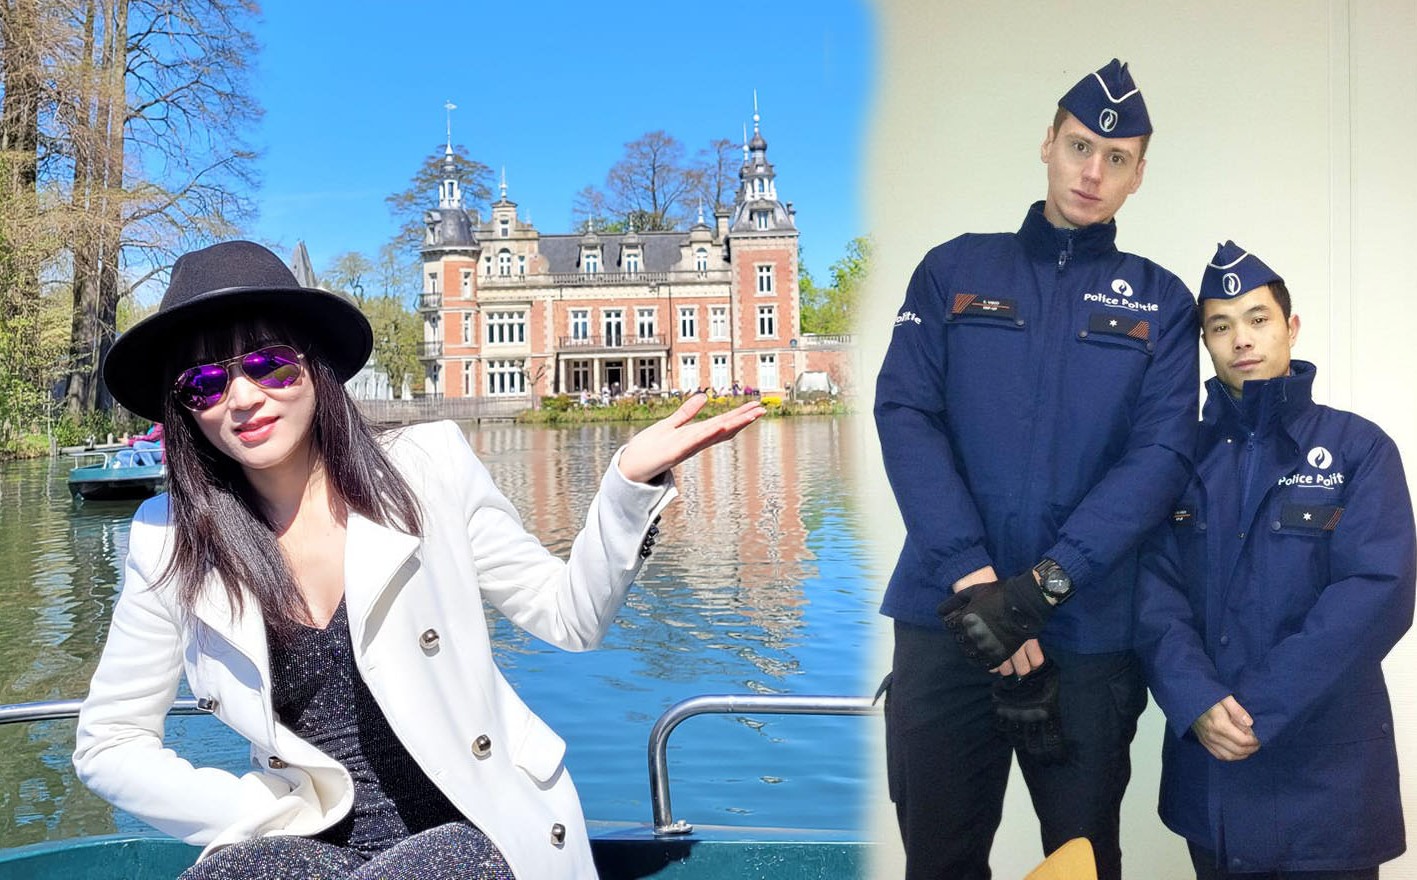 Tuổi đôi mươi sang Bỉ lấy chồng cảnh sát, gái Việt bươn chải đủ nghề, 15 năm về quê 3 lần - Ảnh 1.